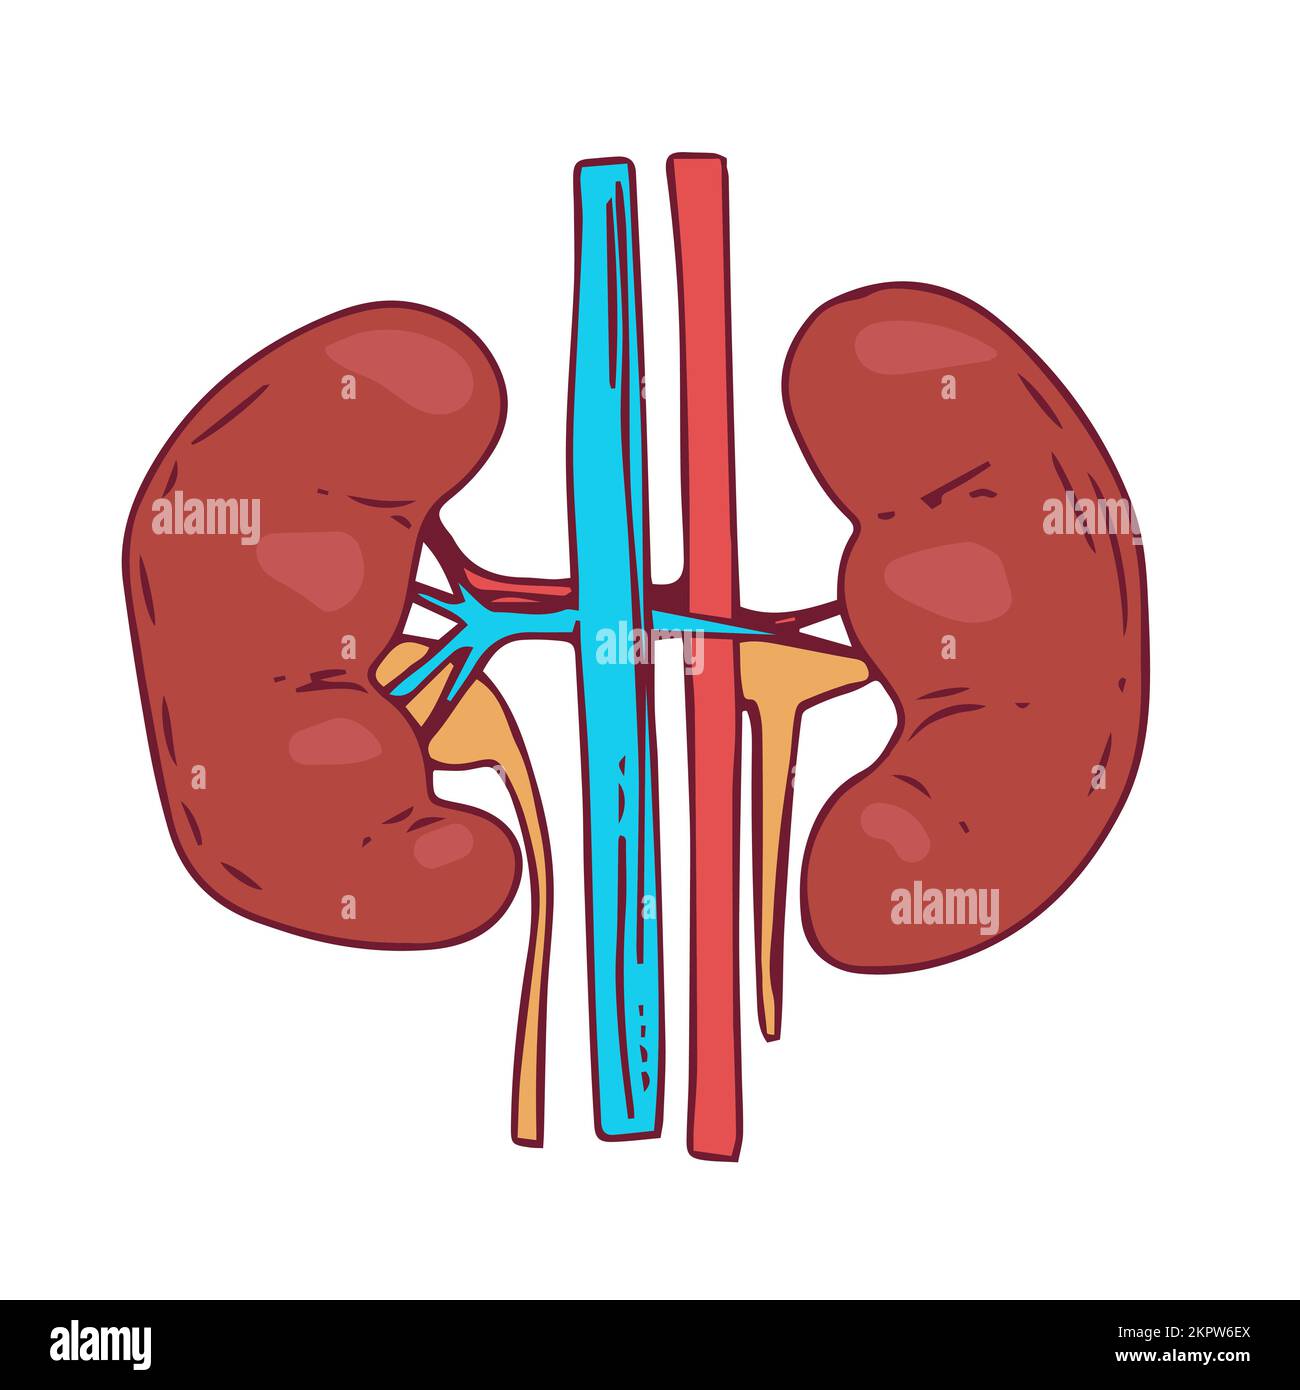 Kidney Vector Illustration man body internal organs Stock Vector Image ...